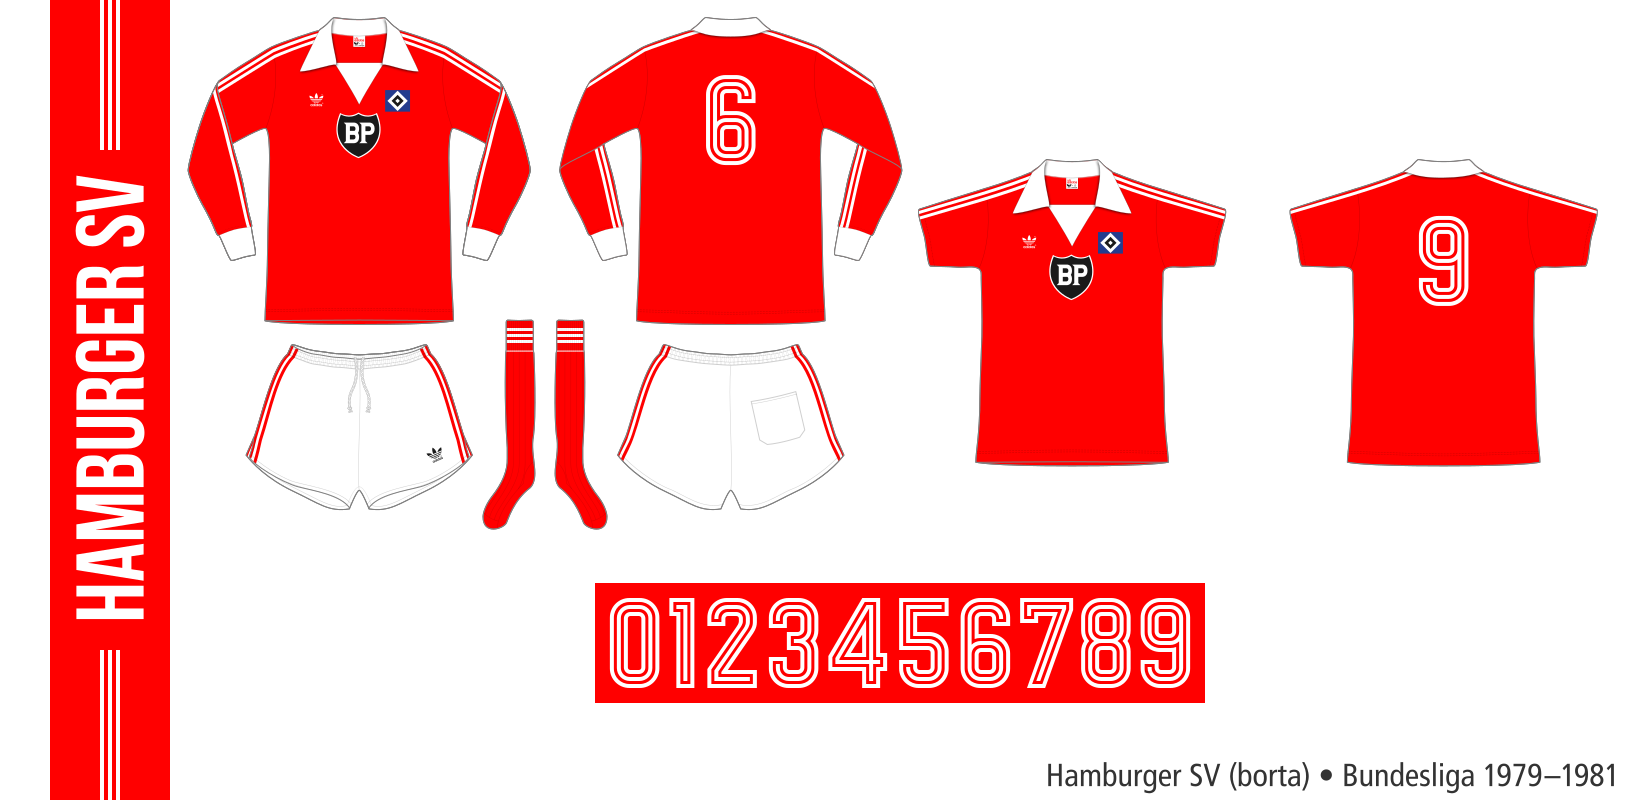 Hamburger SV 1979–1981 (borta)